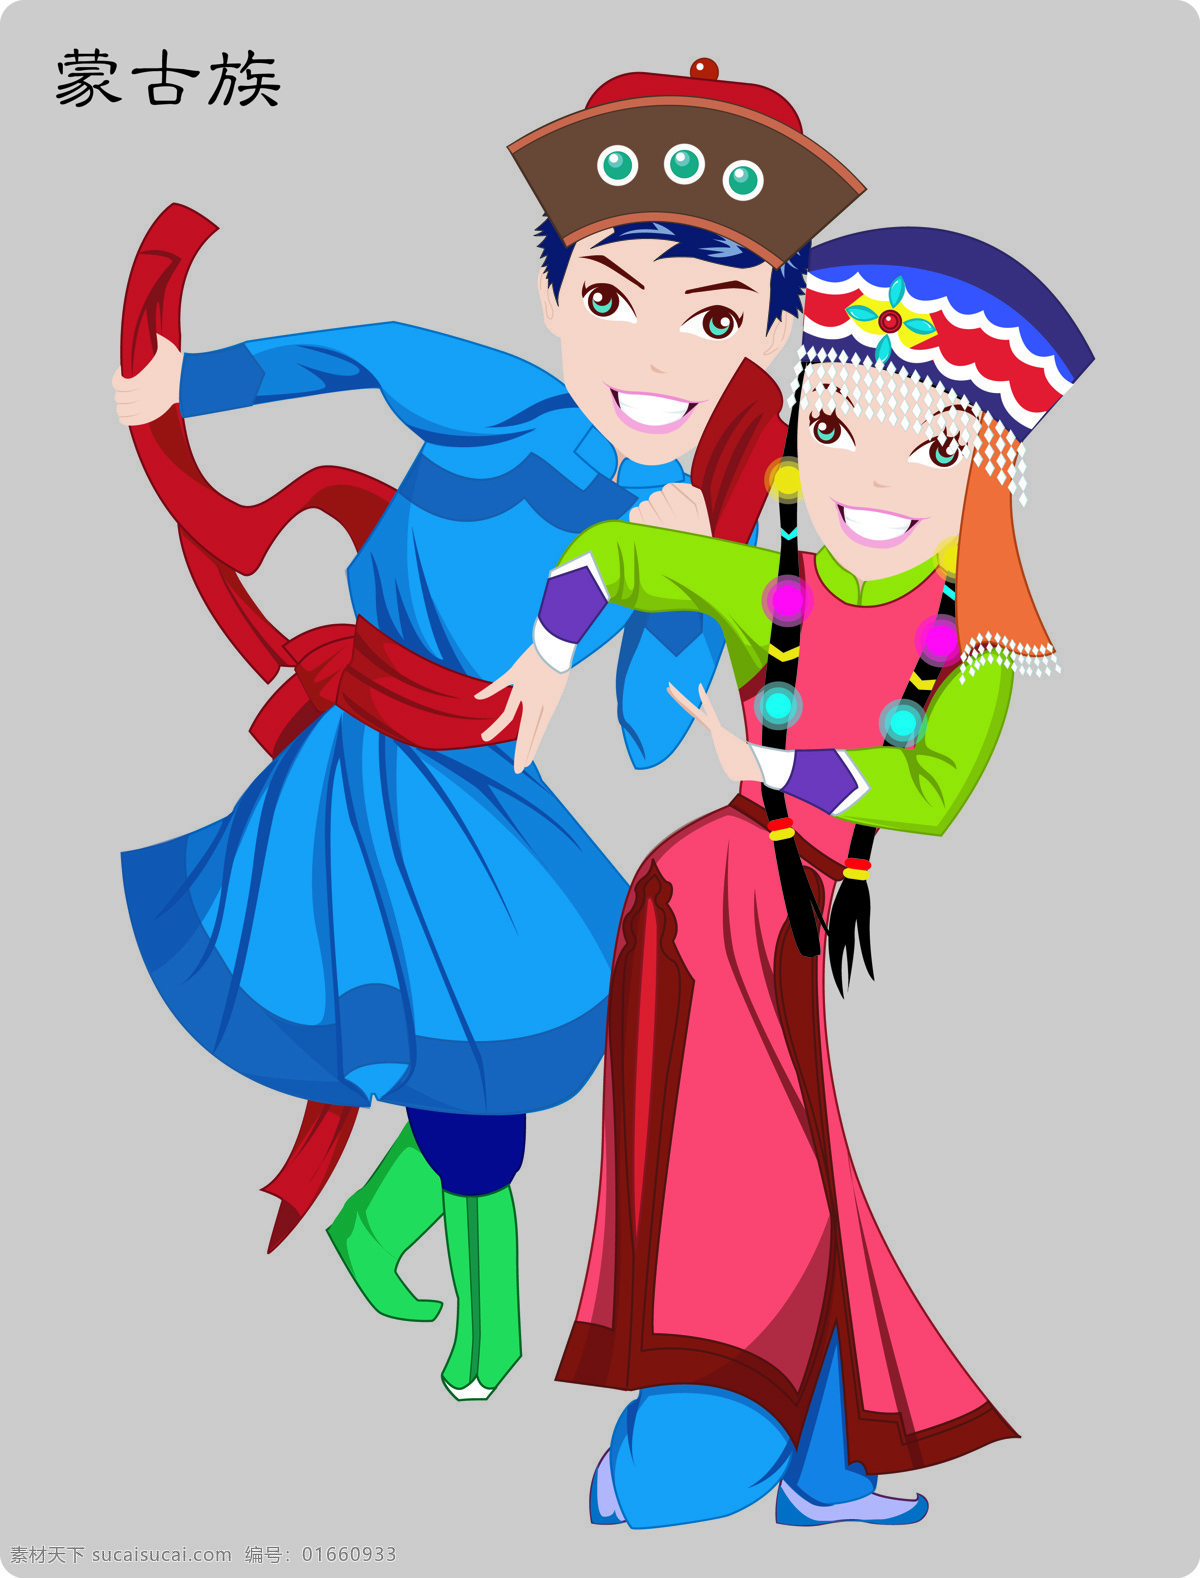 少数民族 蒙古族 民族文化 民族 56个民族 文化艺术 传统文化